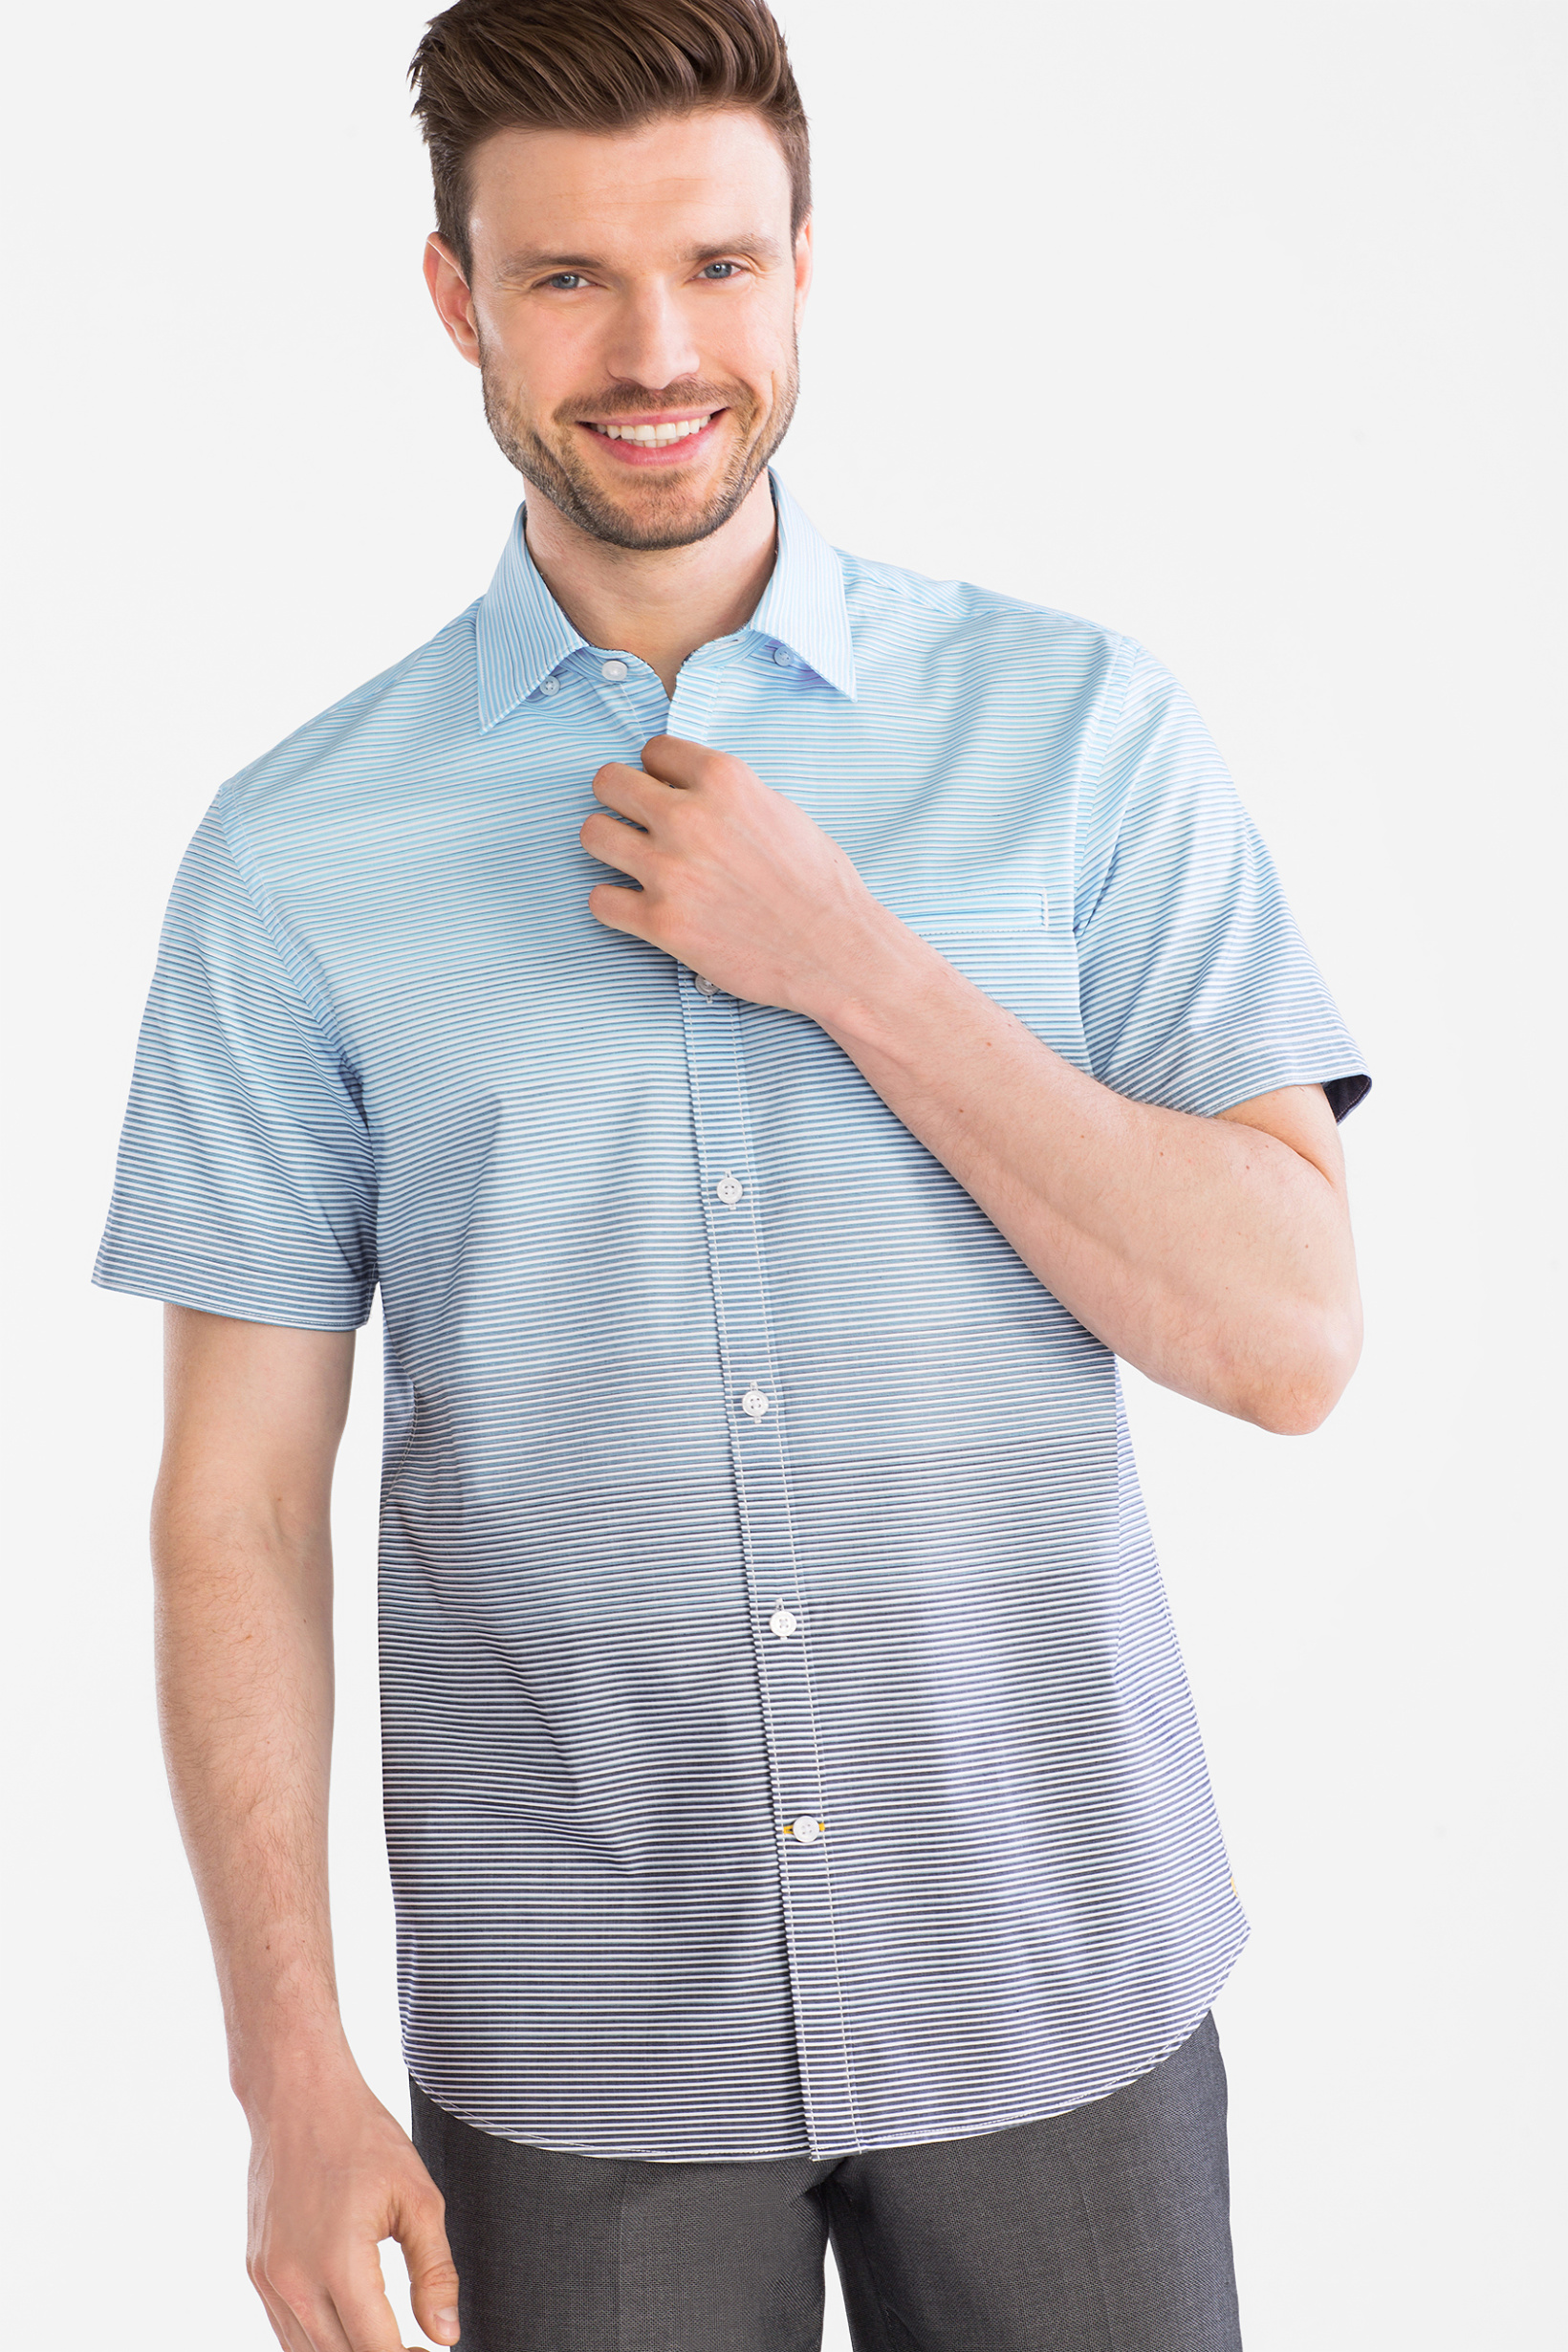 Westbury Premium Overhemd Regular Fit button down gestreept